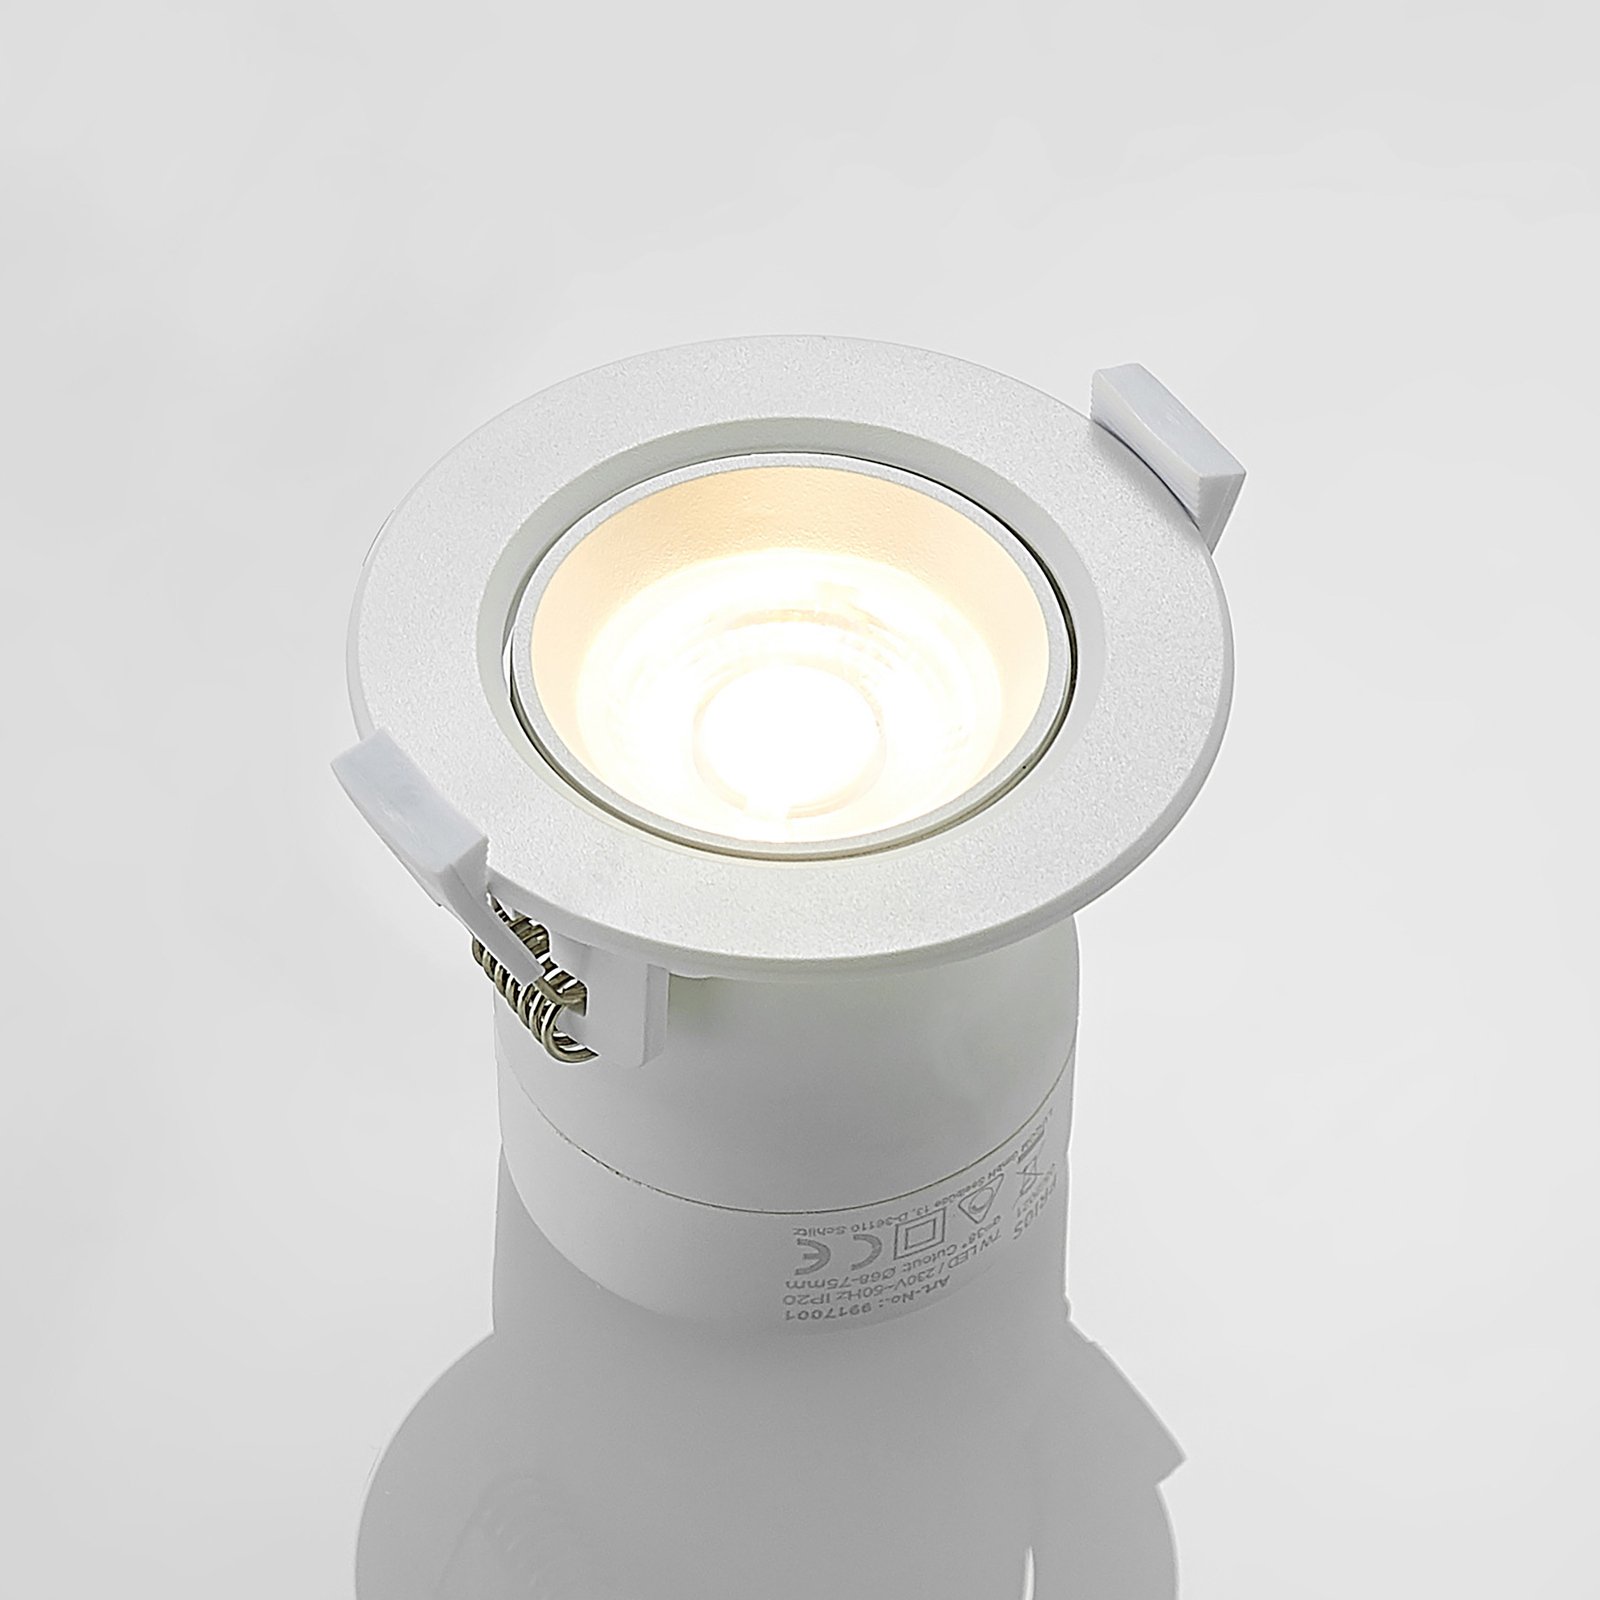 Prios Shima lámpara empotrada LED, blanco, 7 W